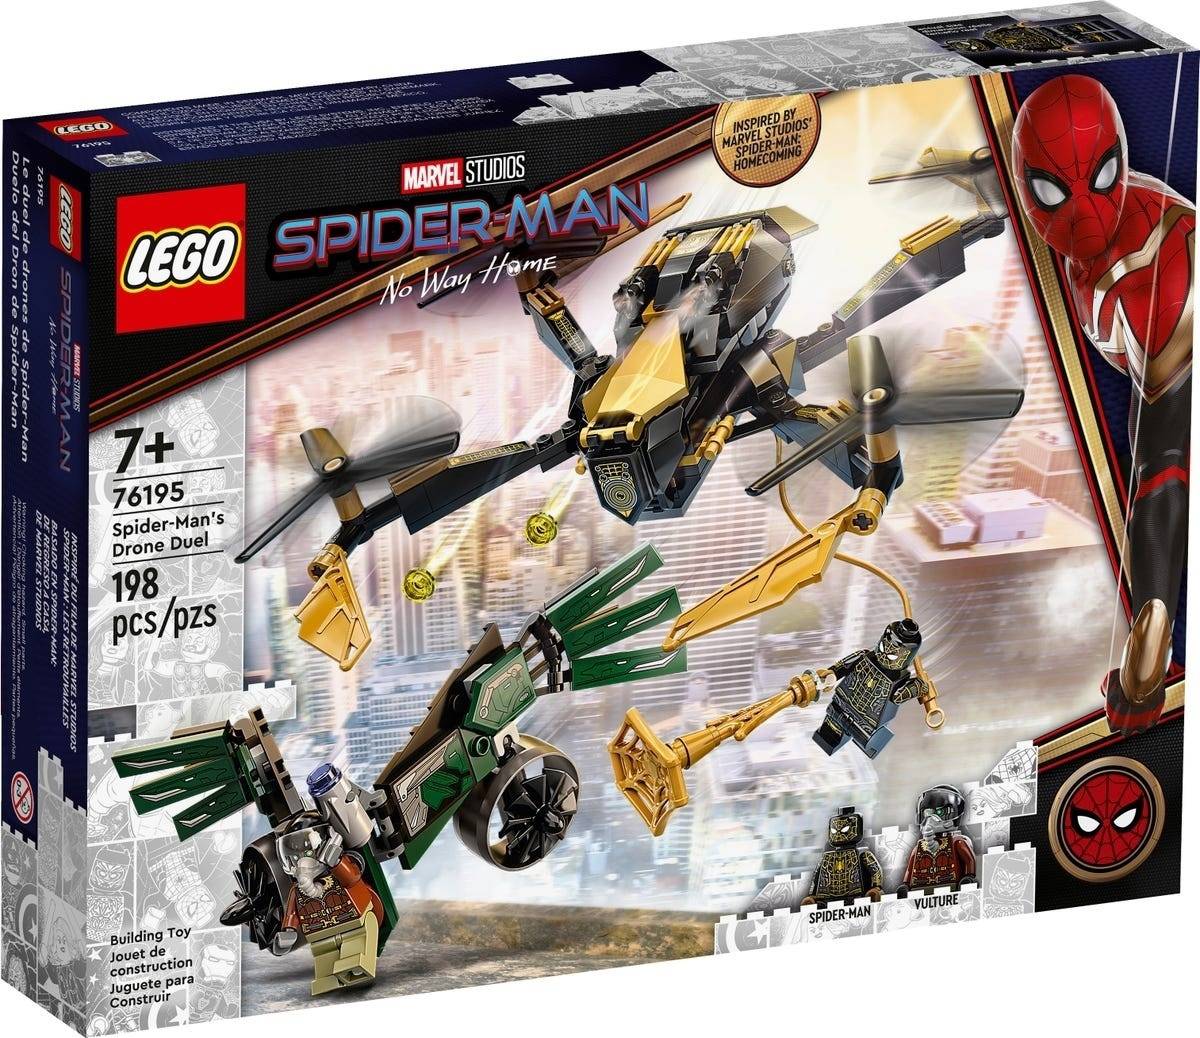 Утечка: Lego-наборы спойлерят фильм «Человек-паук: Нет пути домой» 3